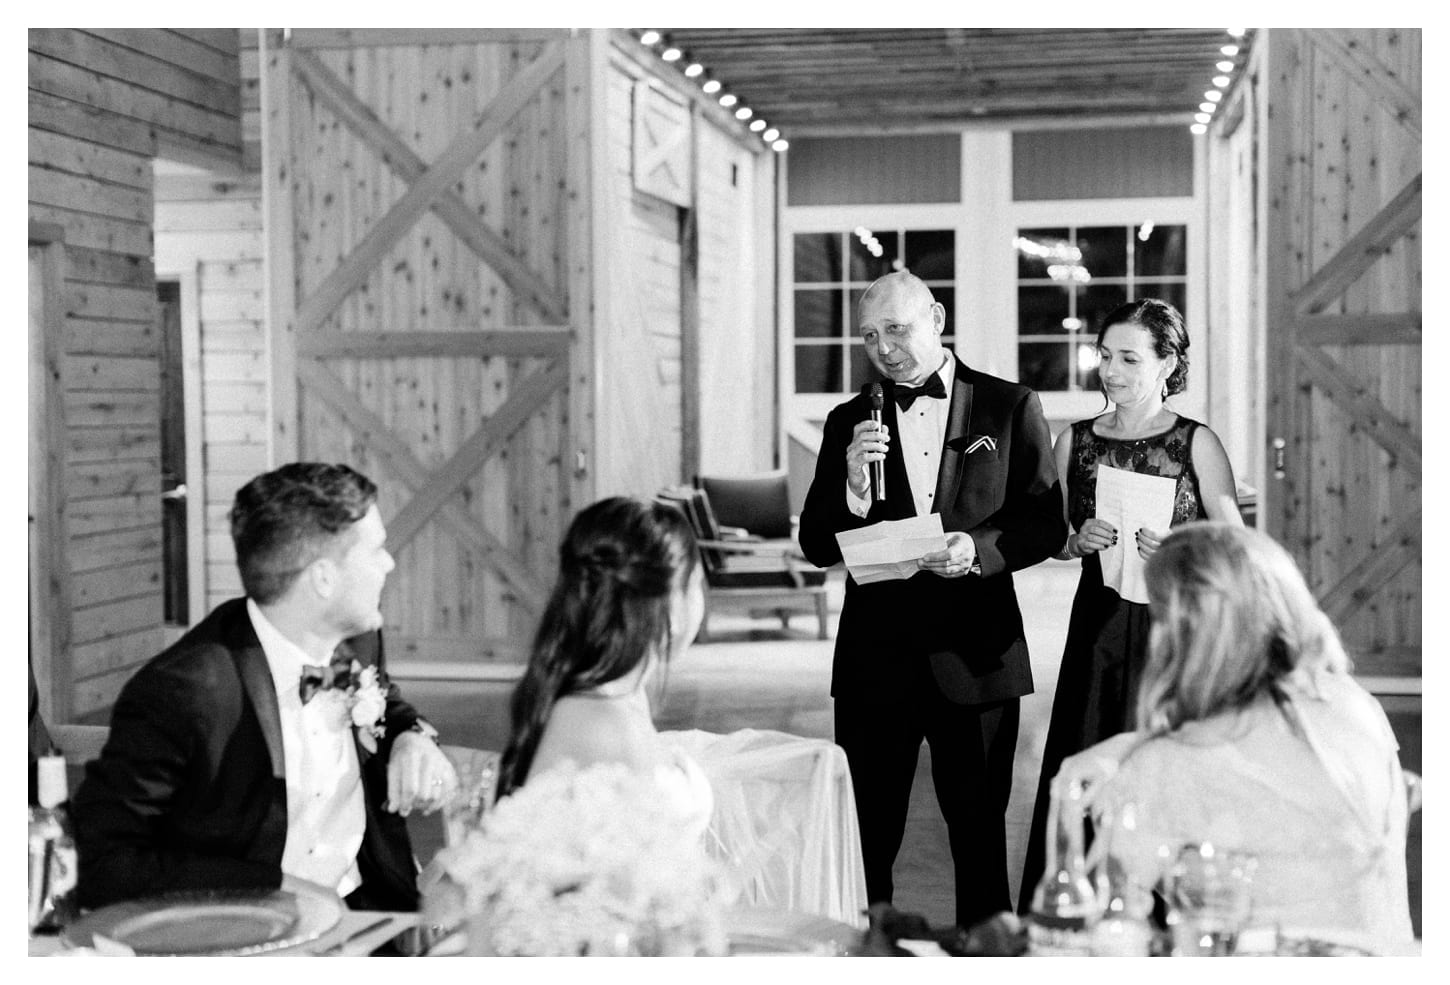 Mount Ida Lodge wedding photographer